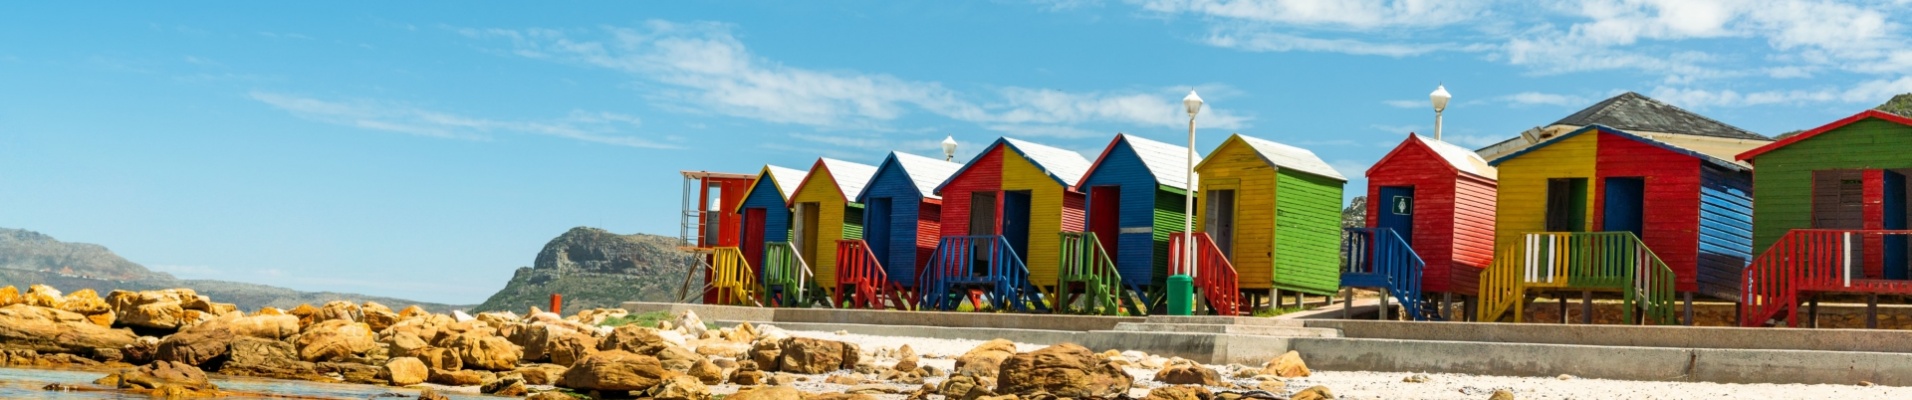 cap-town-maison-colorées-plage